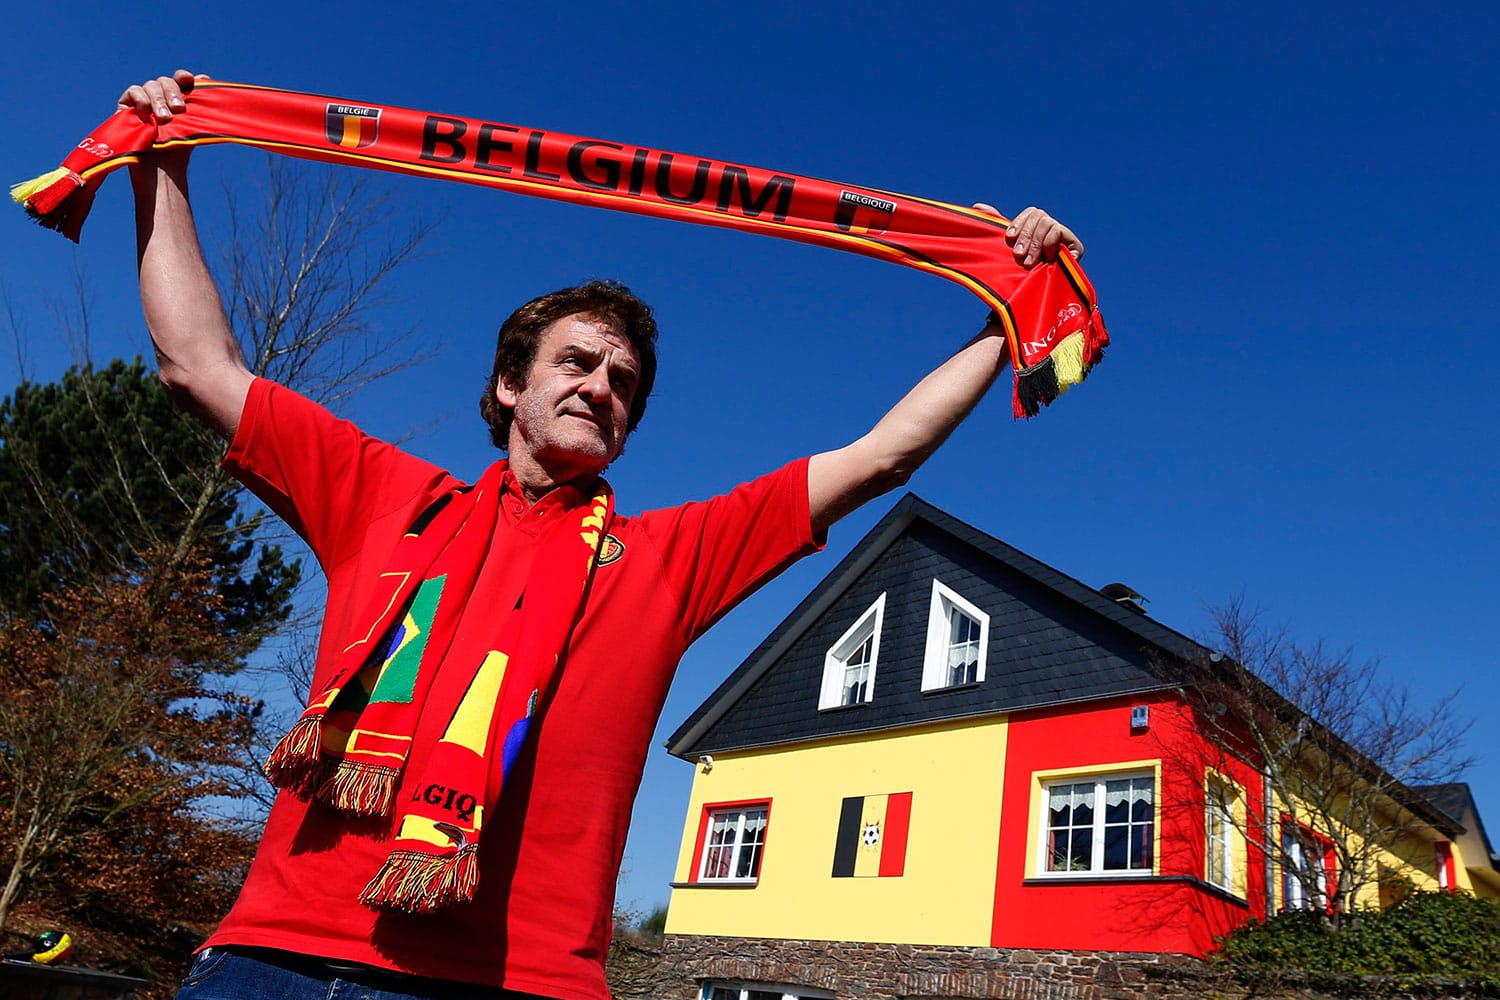 Un belga se salta la reglamentación local para pintar su casa con los colores de la bandera nacional